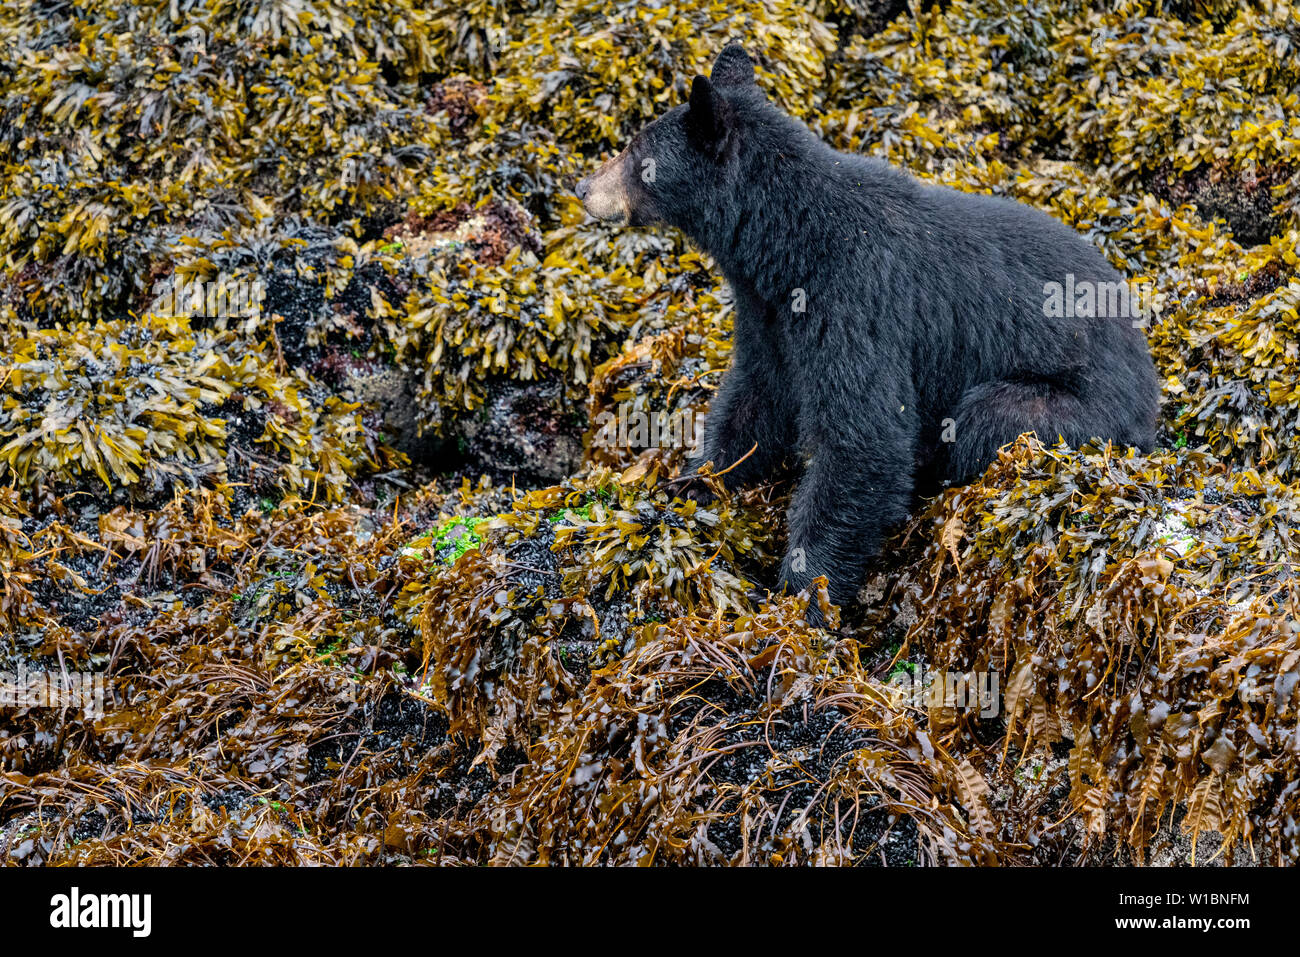 Forrajeo de oso negro, siendo muy alerta en el país de oso grizzly, durante la marea baja en Knight Inlet, Territorio de las primeras Naciones, Bosque lluvioso de los grandes Osos Foto de stock